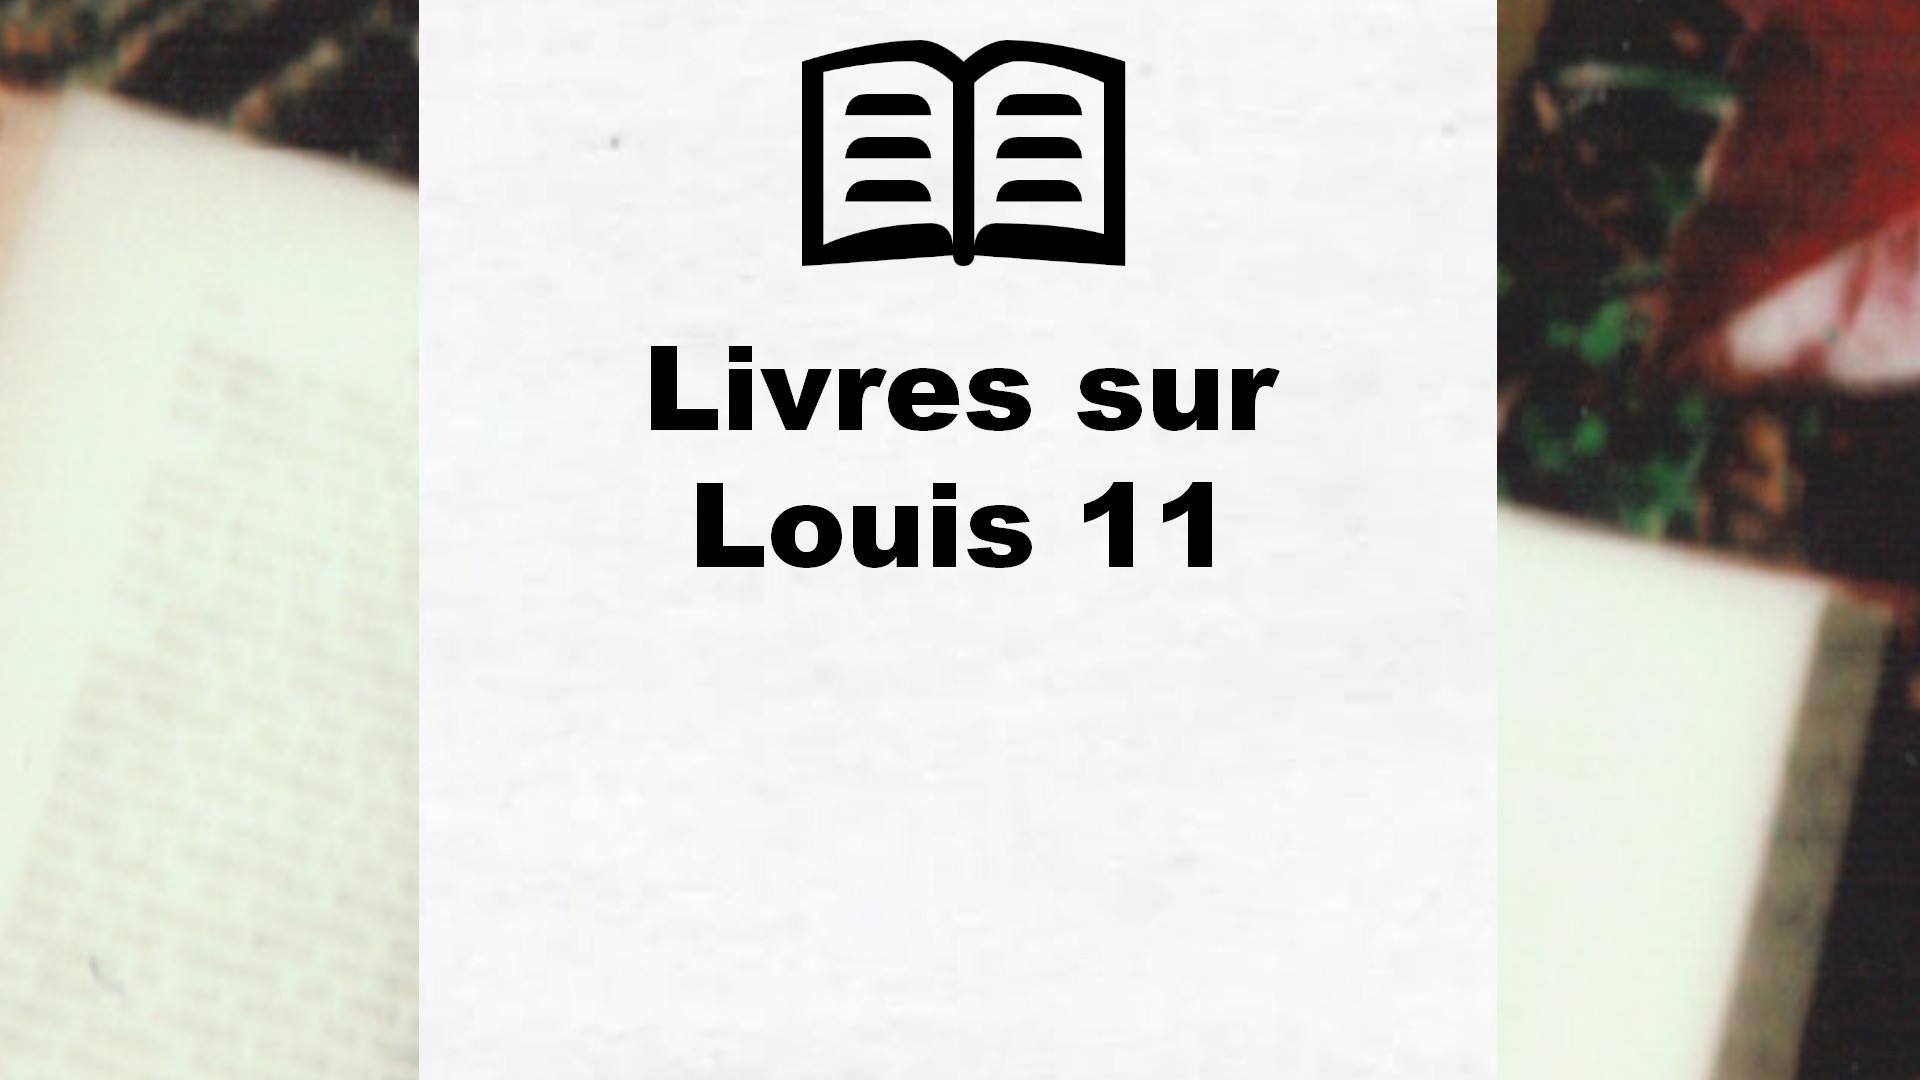 Livres sur Louis 11